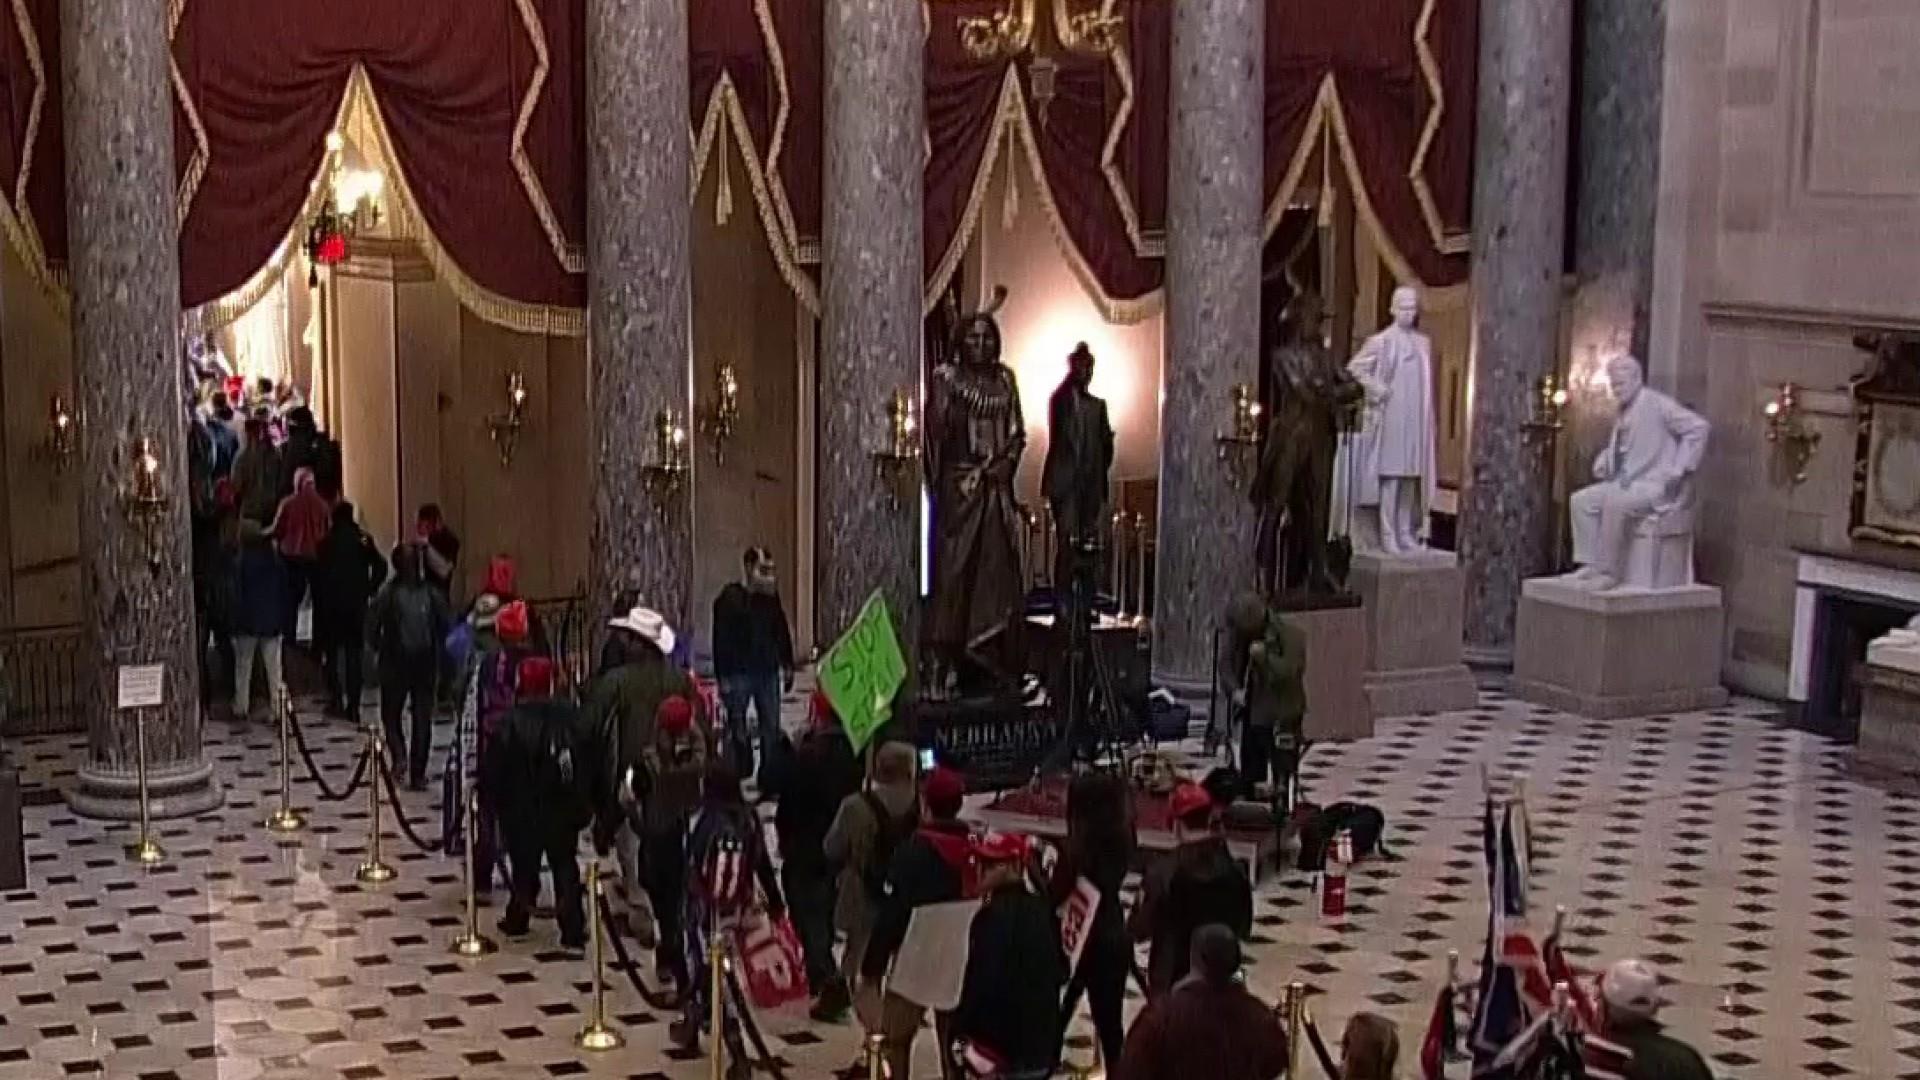 Protesters enter Capitol building in unprecedented security breach